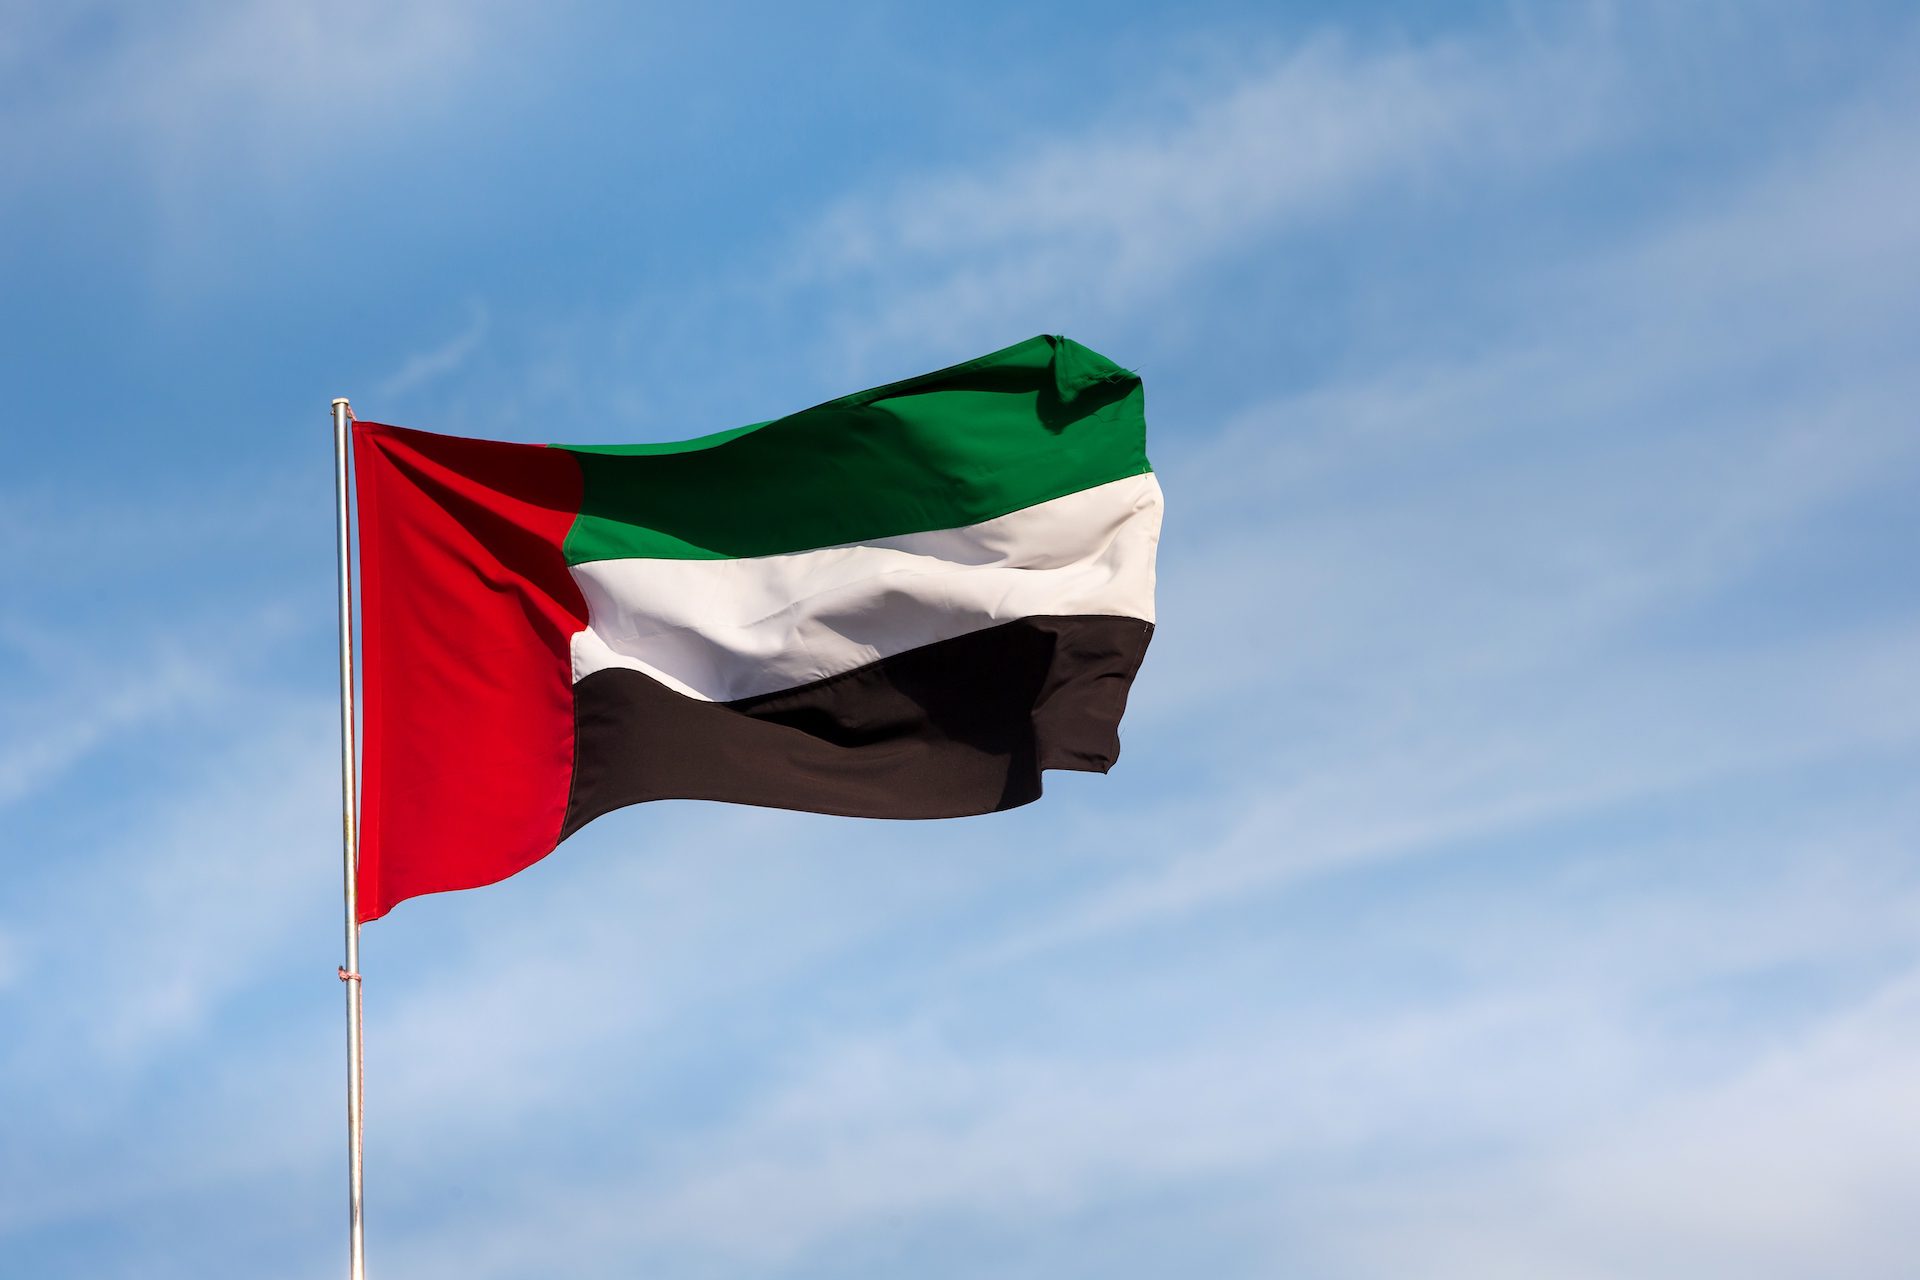 المجلس الأعلى للاتحاد ينتخب محمد بن زايد رئيسا لدولة الإمارات